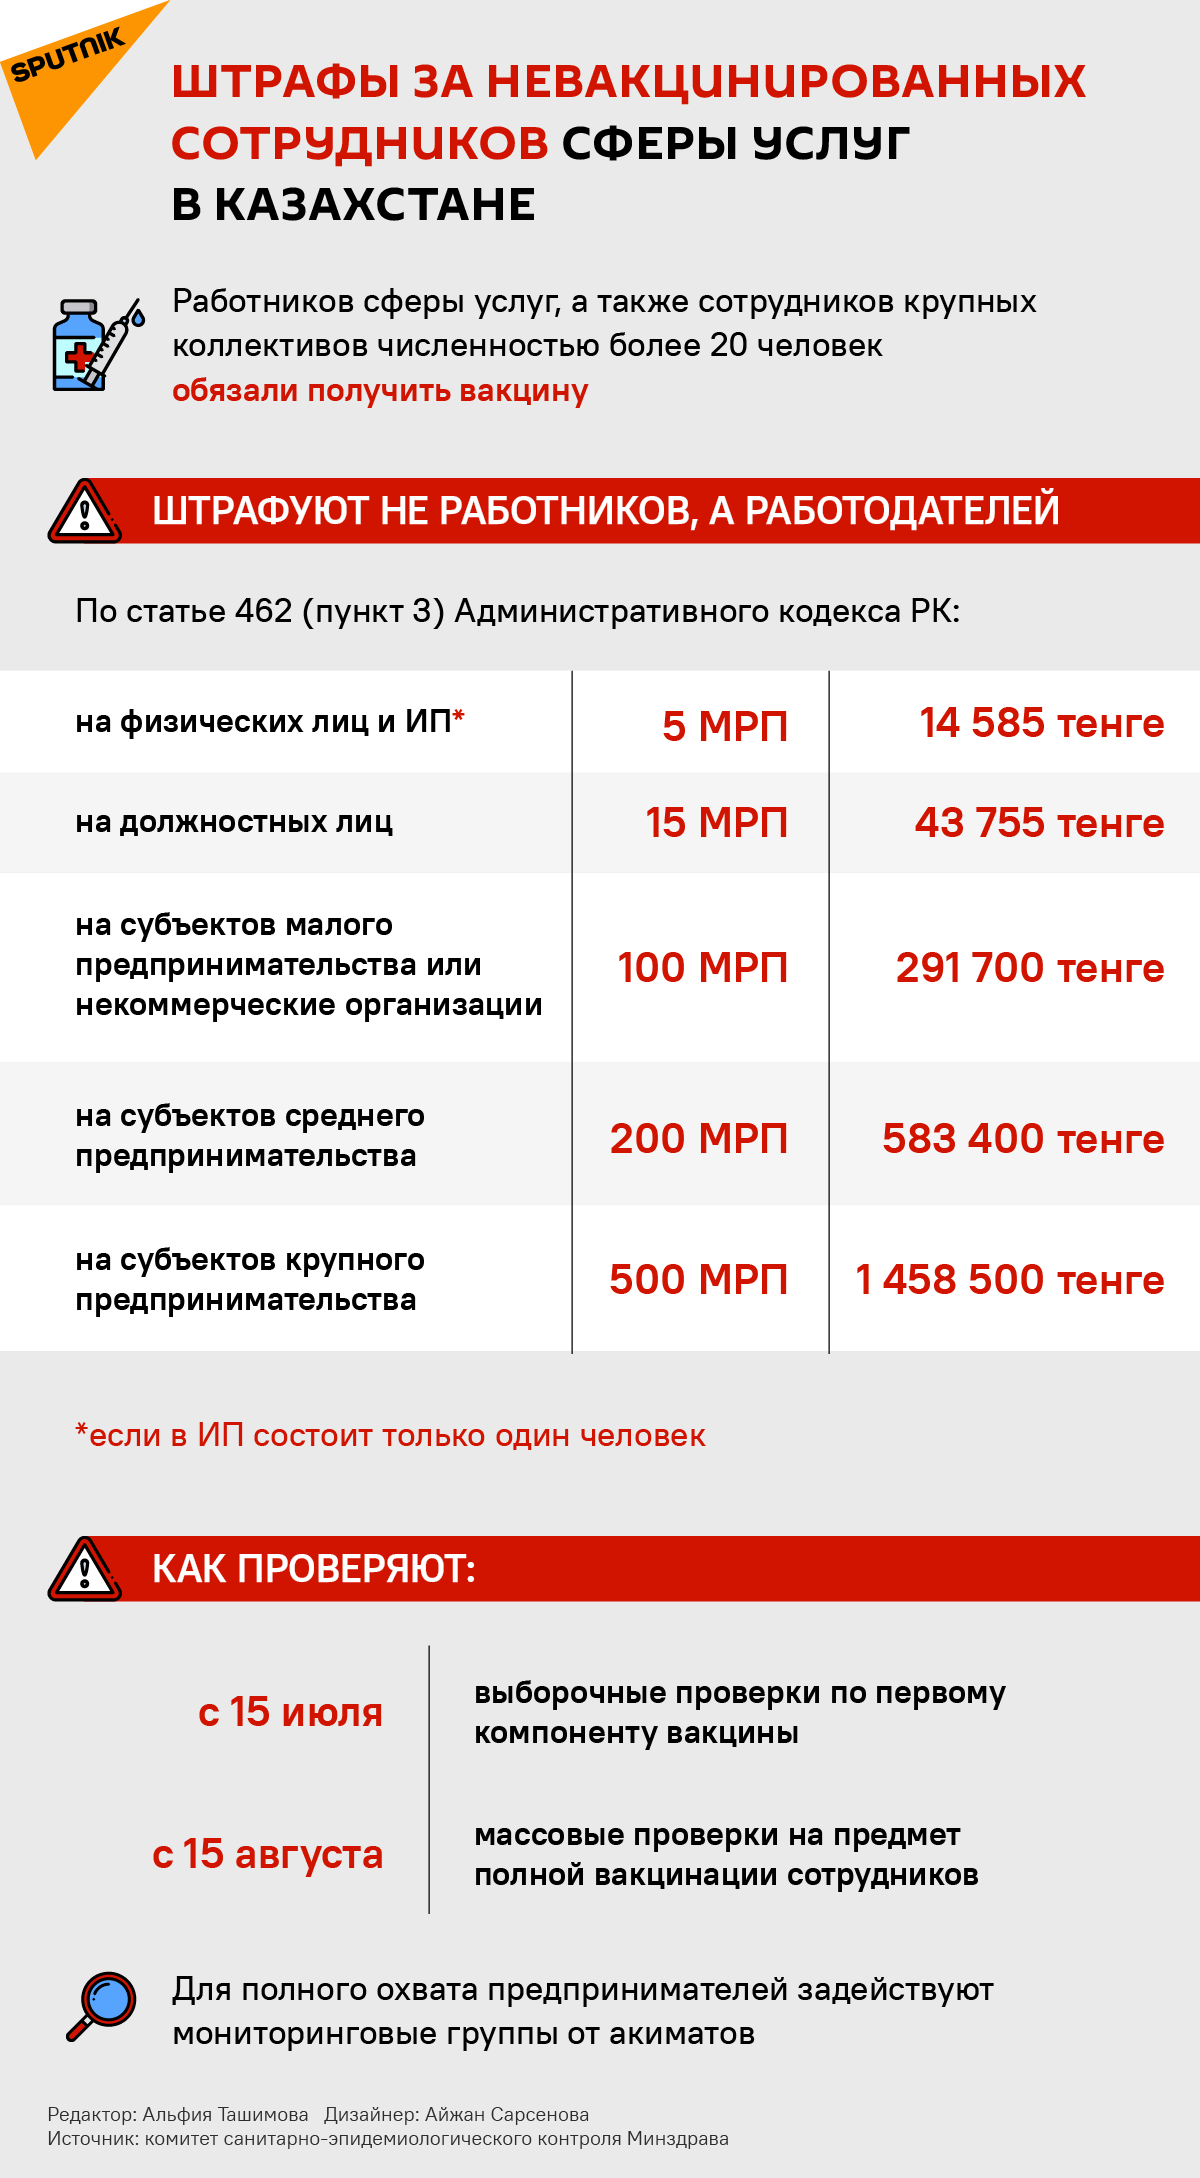 Штрафы за отказ от вакцинации в Казахстане - инфографика - Sputnik Казахстан, 1920, 05.07.2021